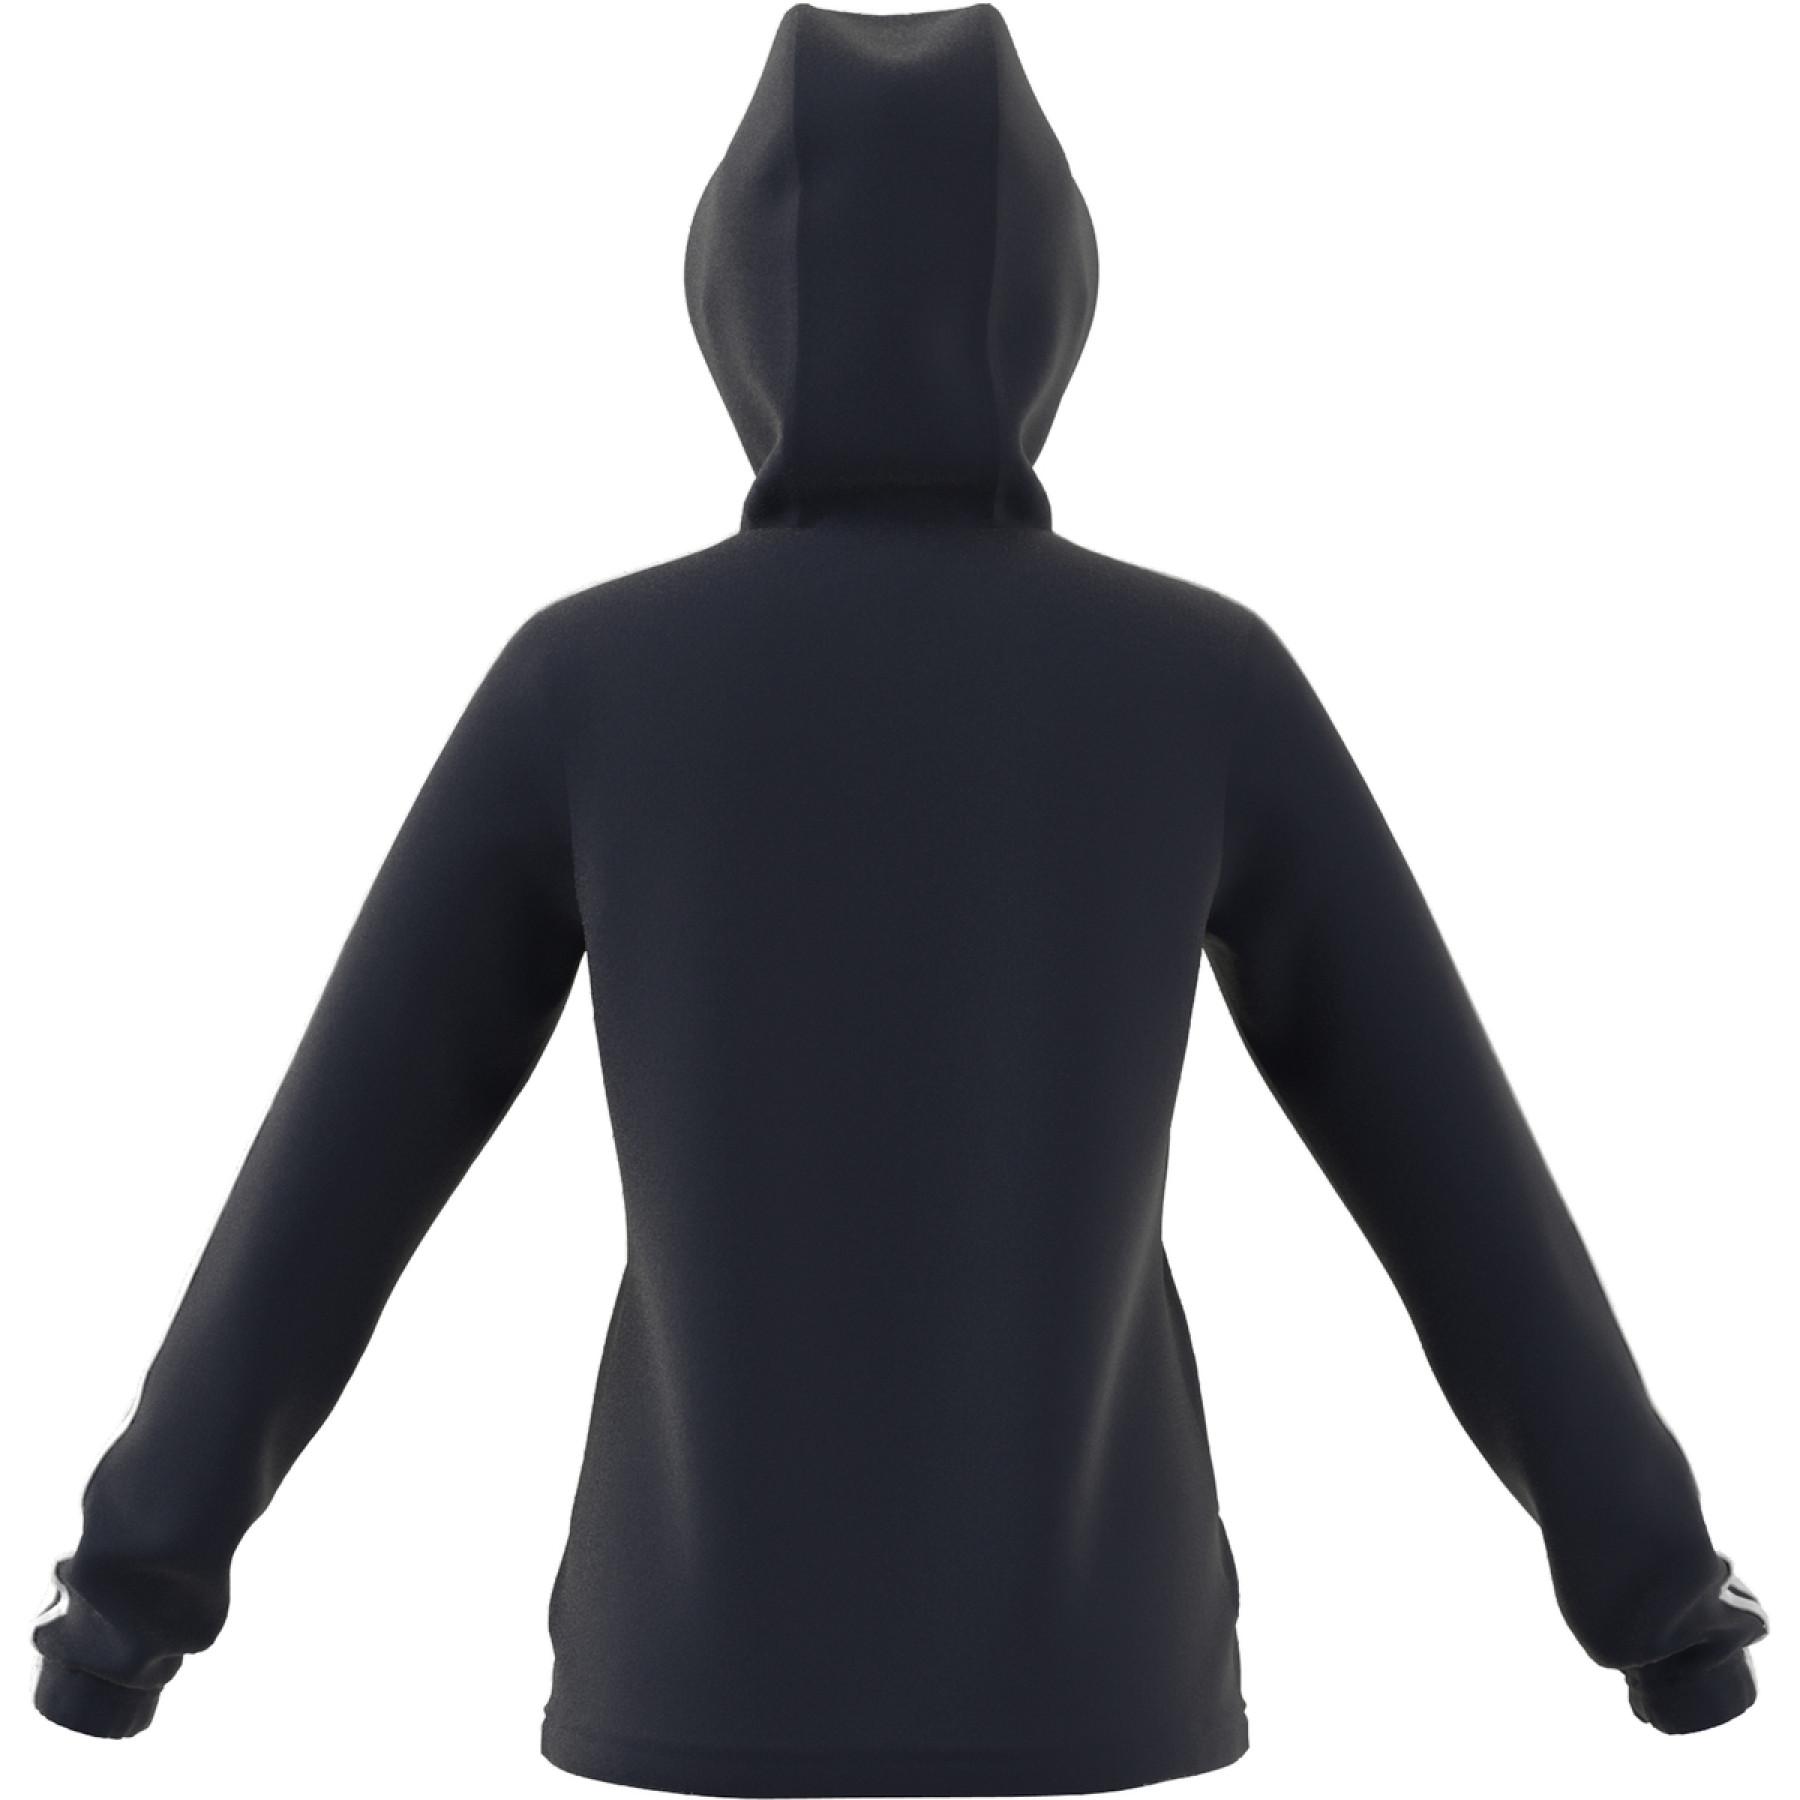 Children's hooded sweatshirt with zip adidas Essentials 3S